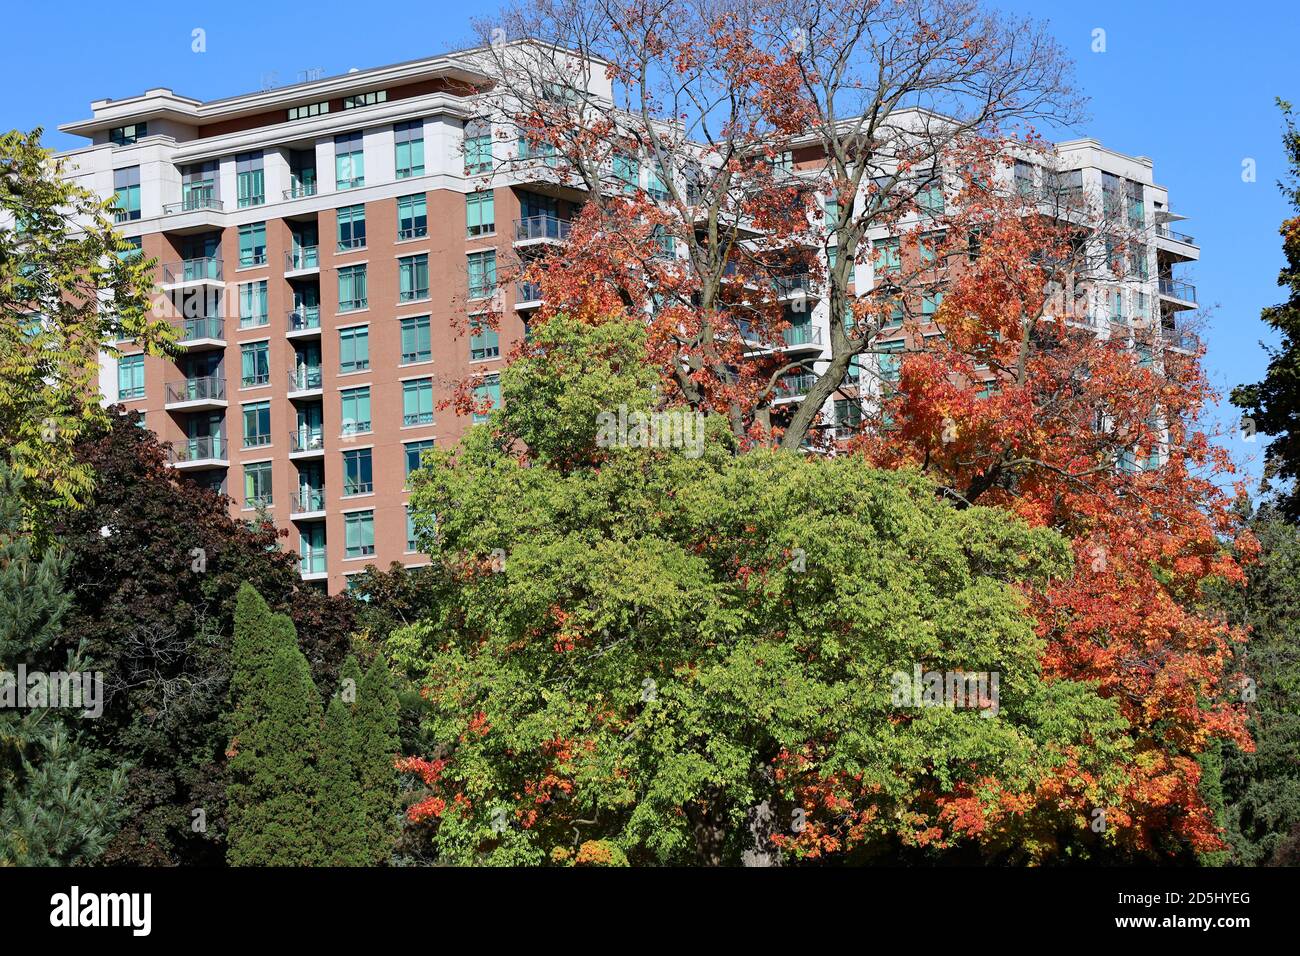 Grand immeuble d'appartements entouré d'arbres aux couleurs de l'automne Banque D'Images